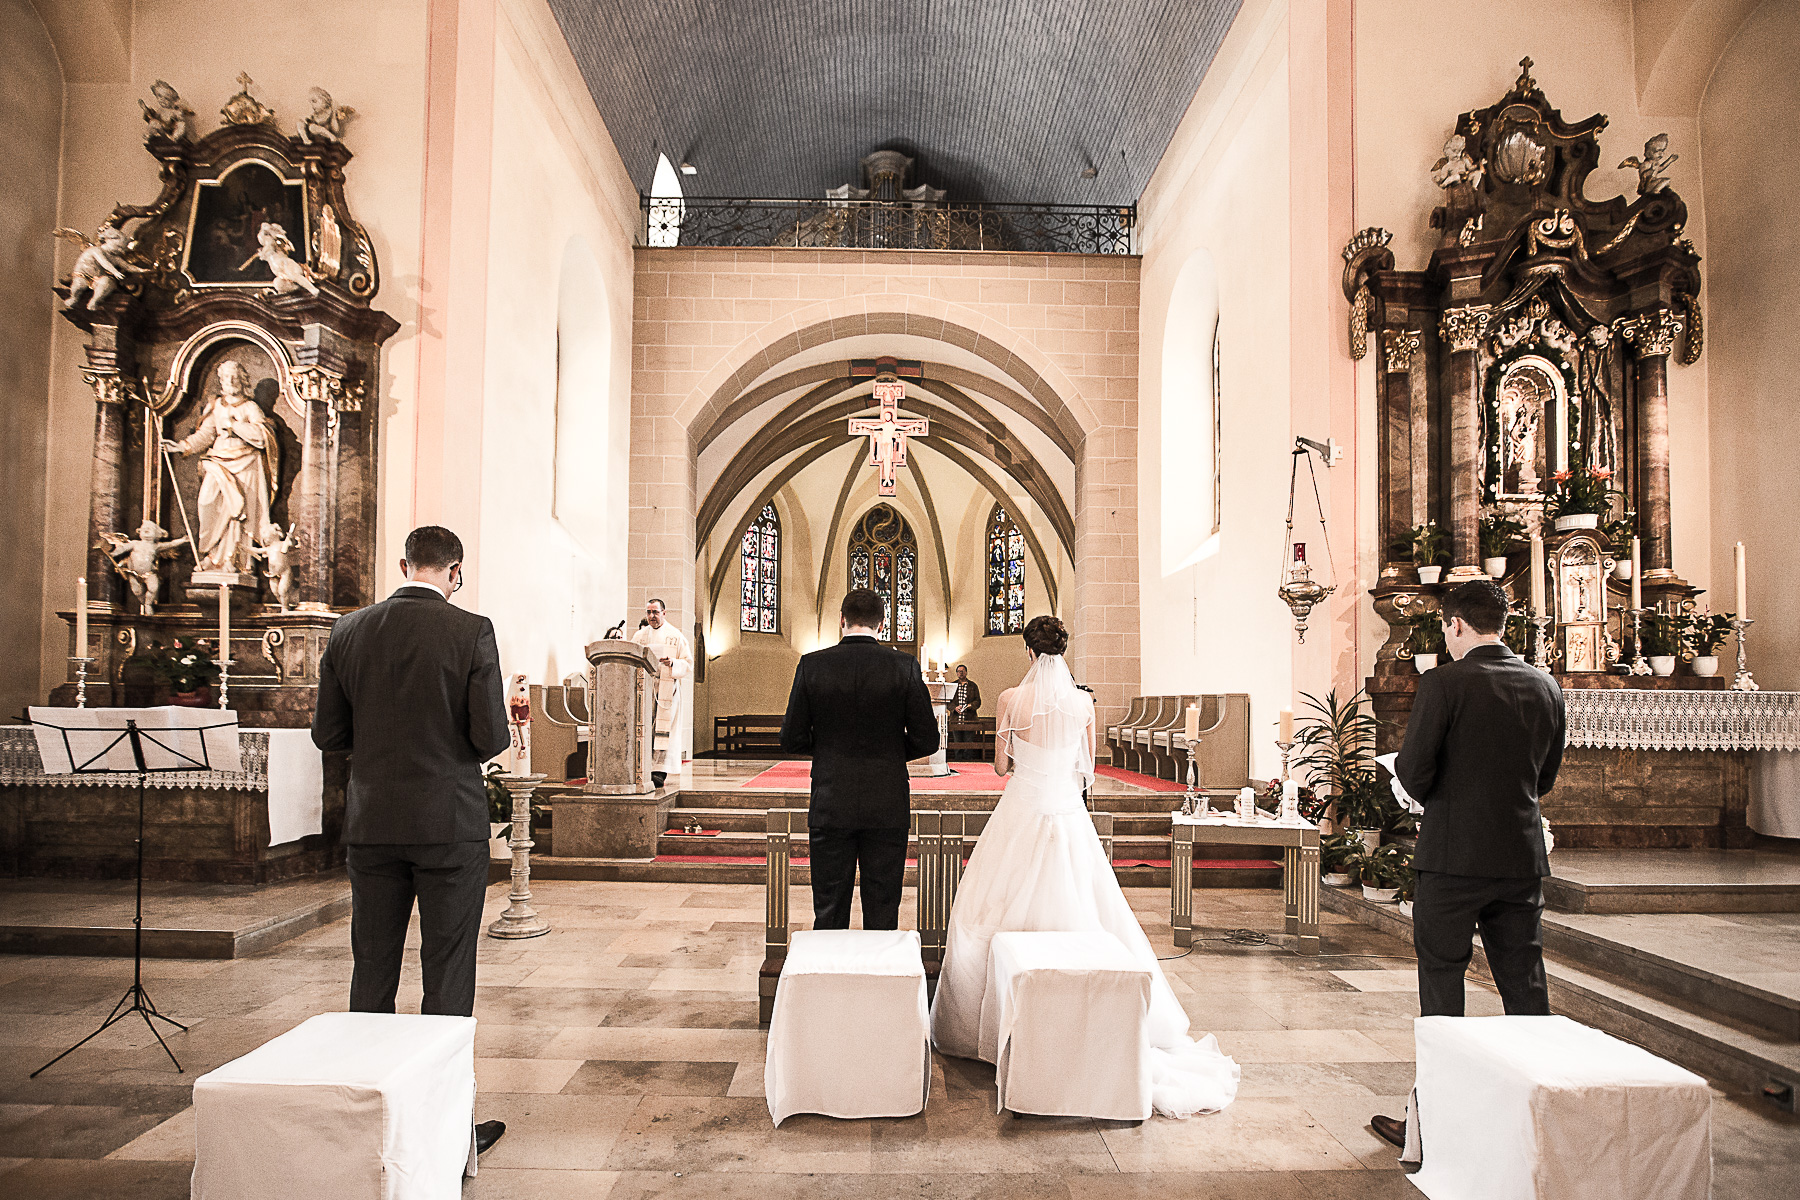 Auf beiden Seiten neben dem Brautpaar stehen die Trauzeugen und lesen die Kirchenliedtexte auf dem Blatt, den Sie in ihren Händen halten. Im Hintergrund ist der Priester vor seinem Lesepult auf dem Ambo sichtbar.